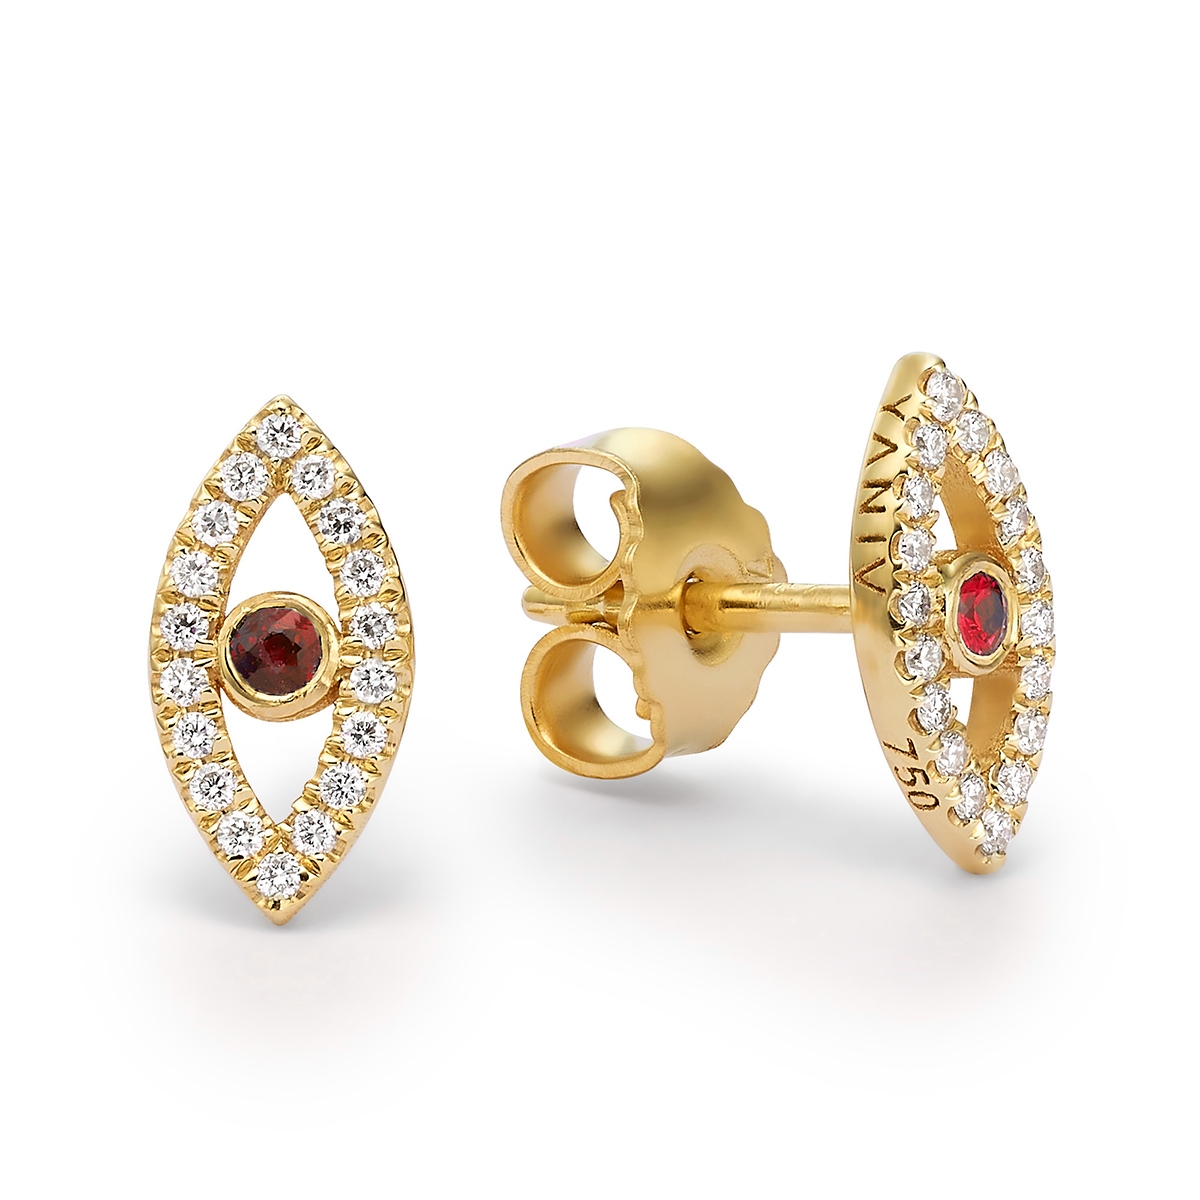 Yaniv Fine Jewelry 18K Gold Evil Eye Earrings with Ruby Stone - 1